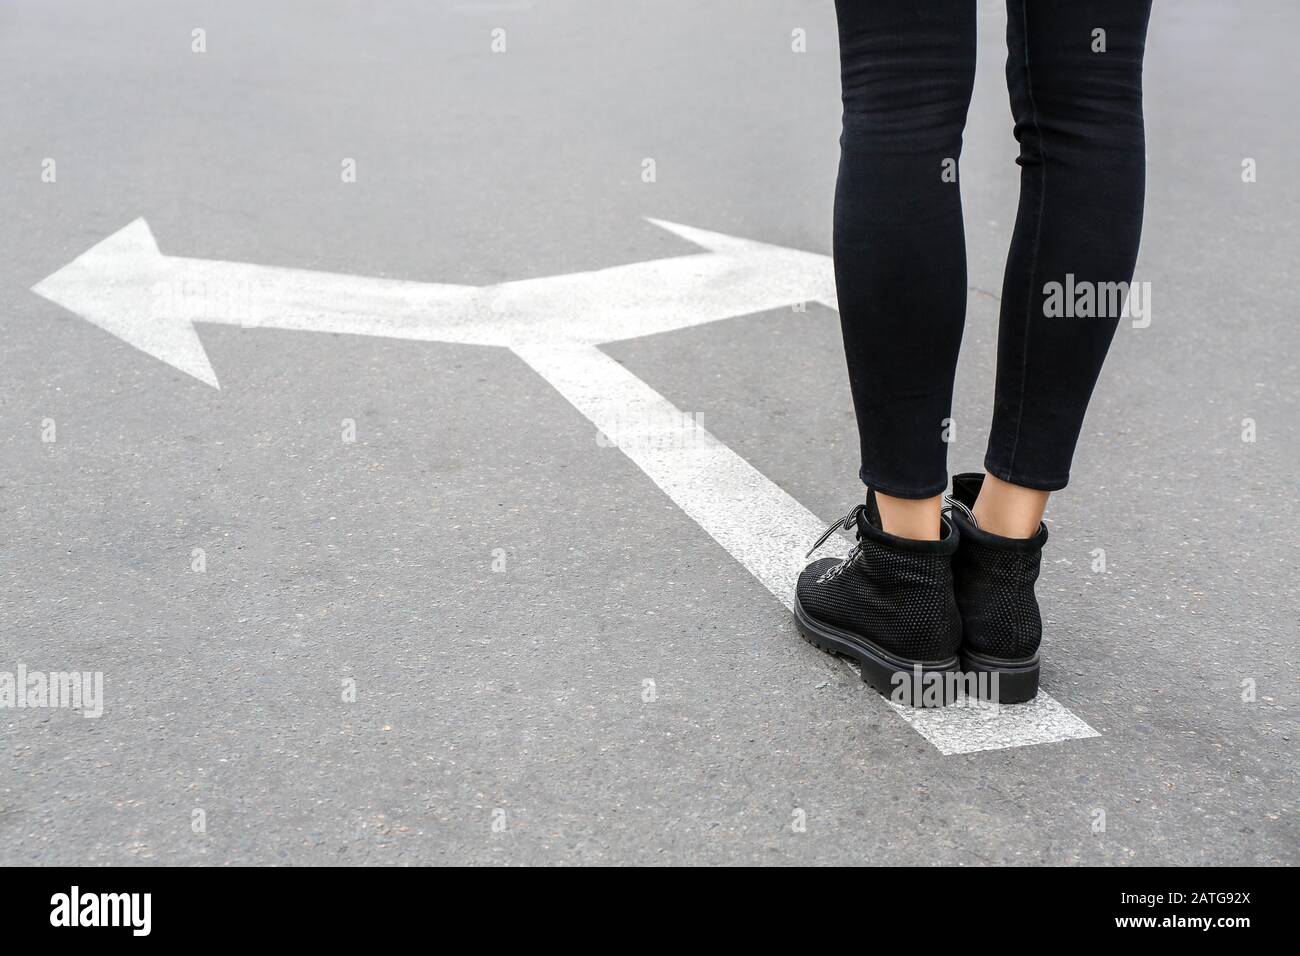 Jeune femme debout sur la route avec des flèches de marquage. Concept de choix Banque D'Images